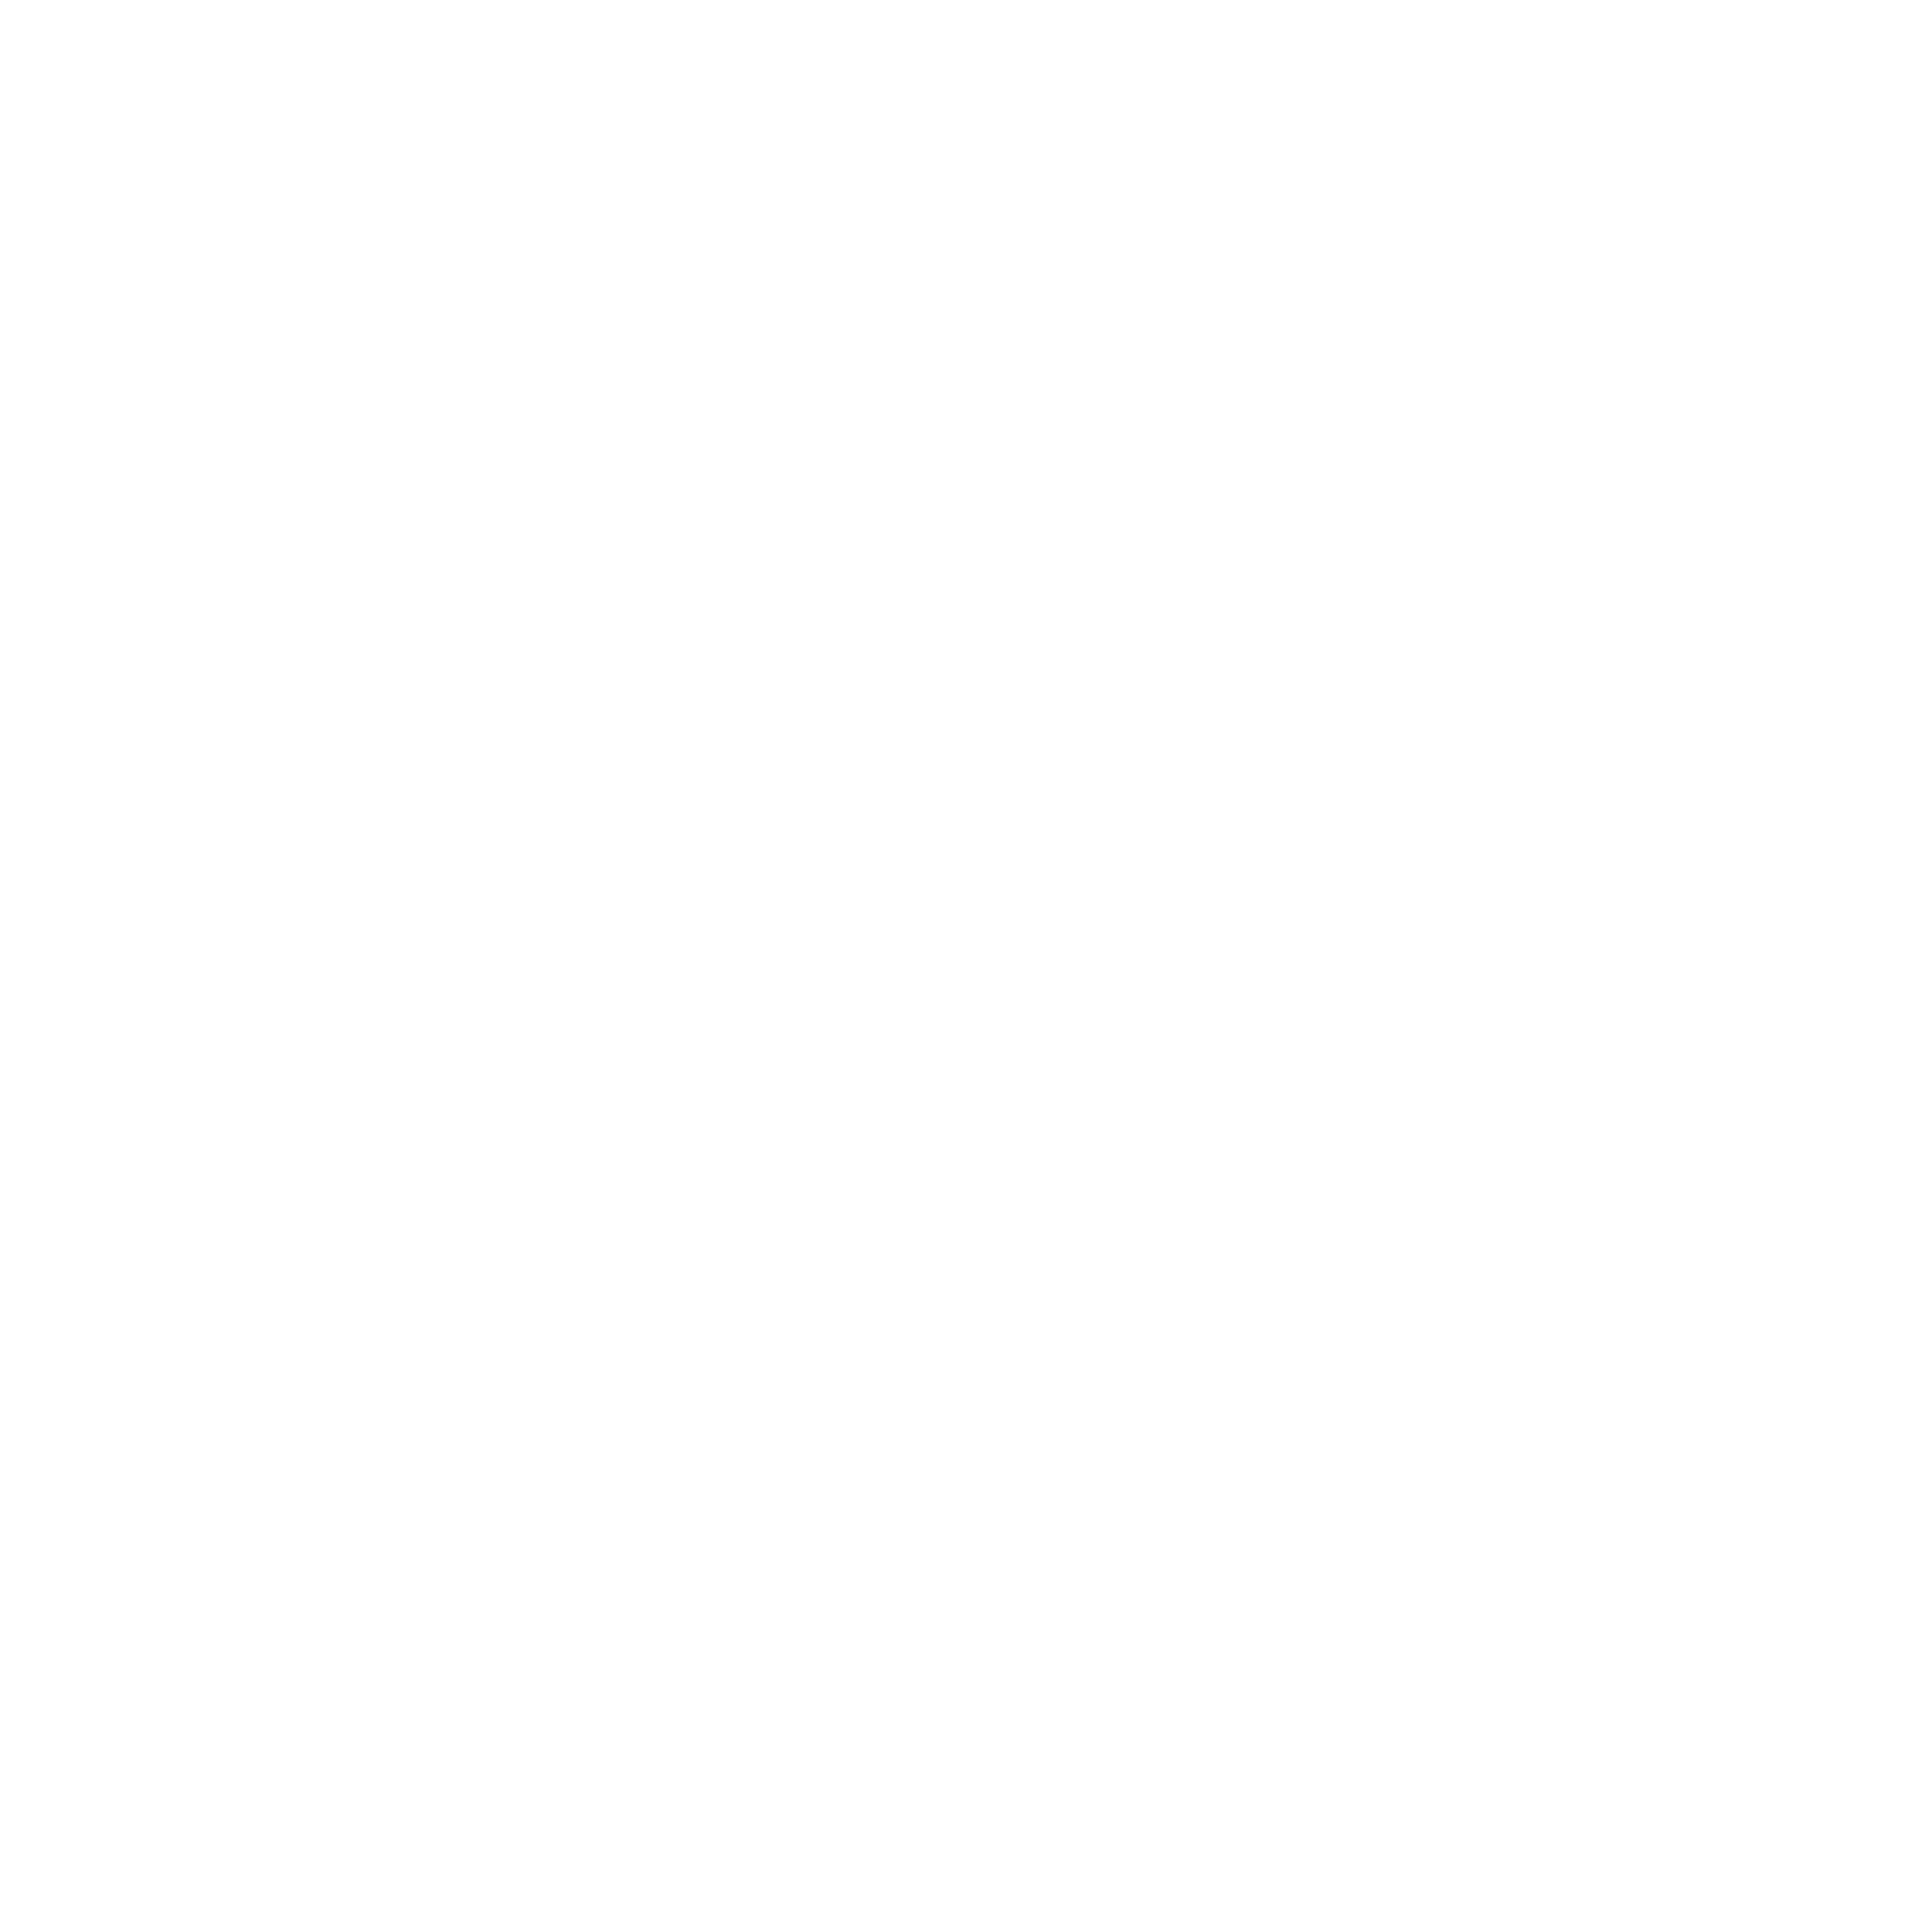 Acxiom Logo - Acxiom Logo PNG Transparent & SVG Vector